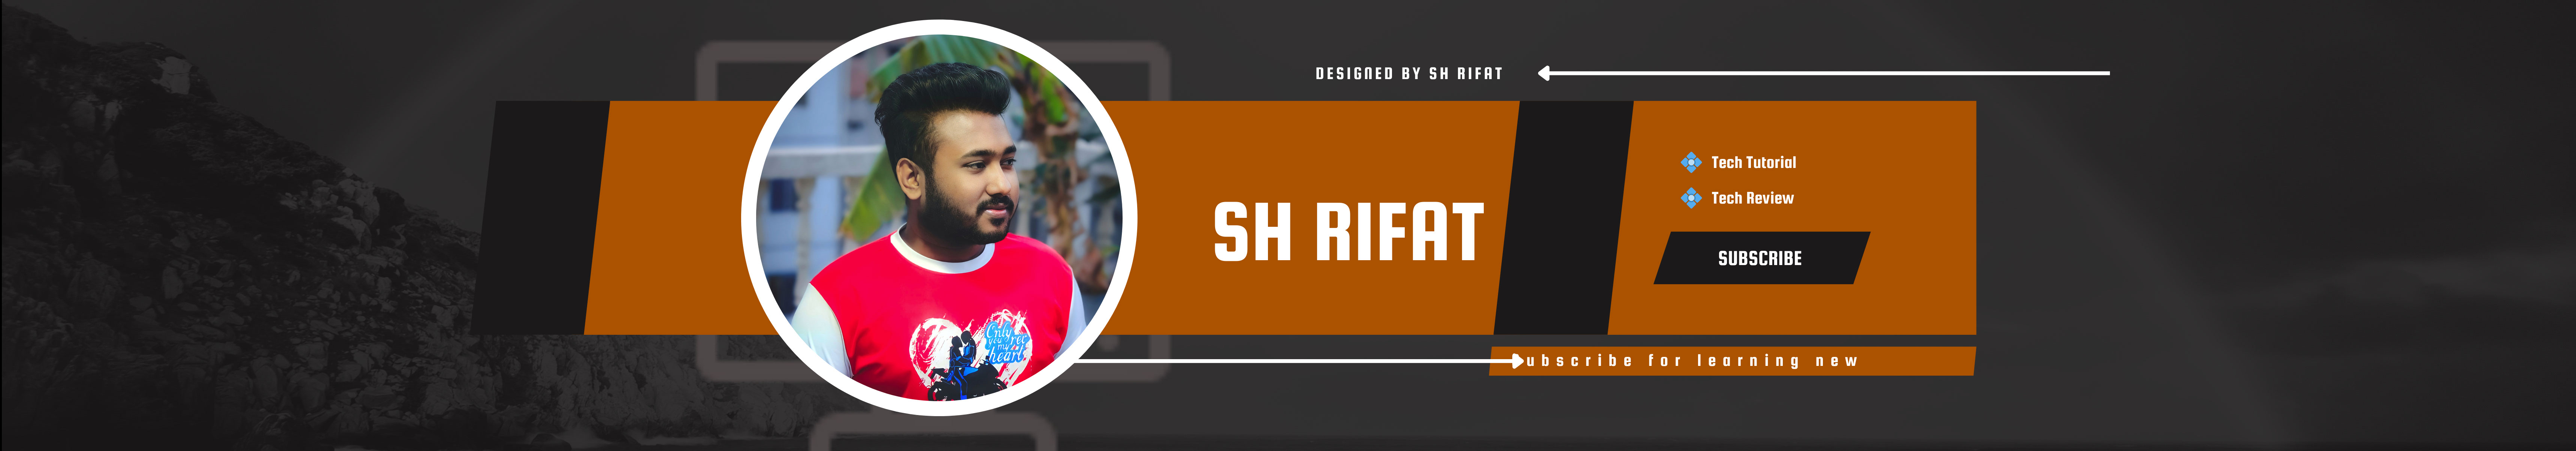 Shahriyar Rifat's profile banner